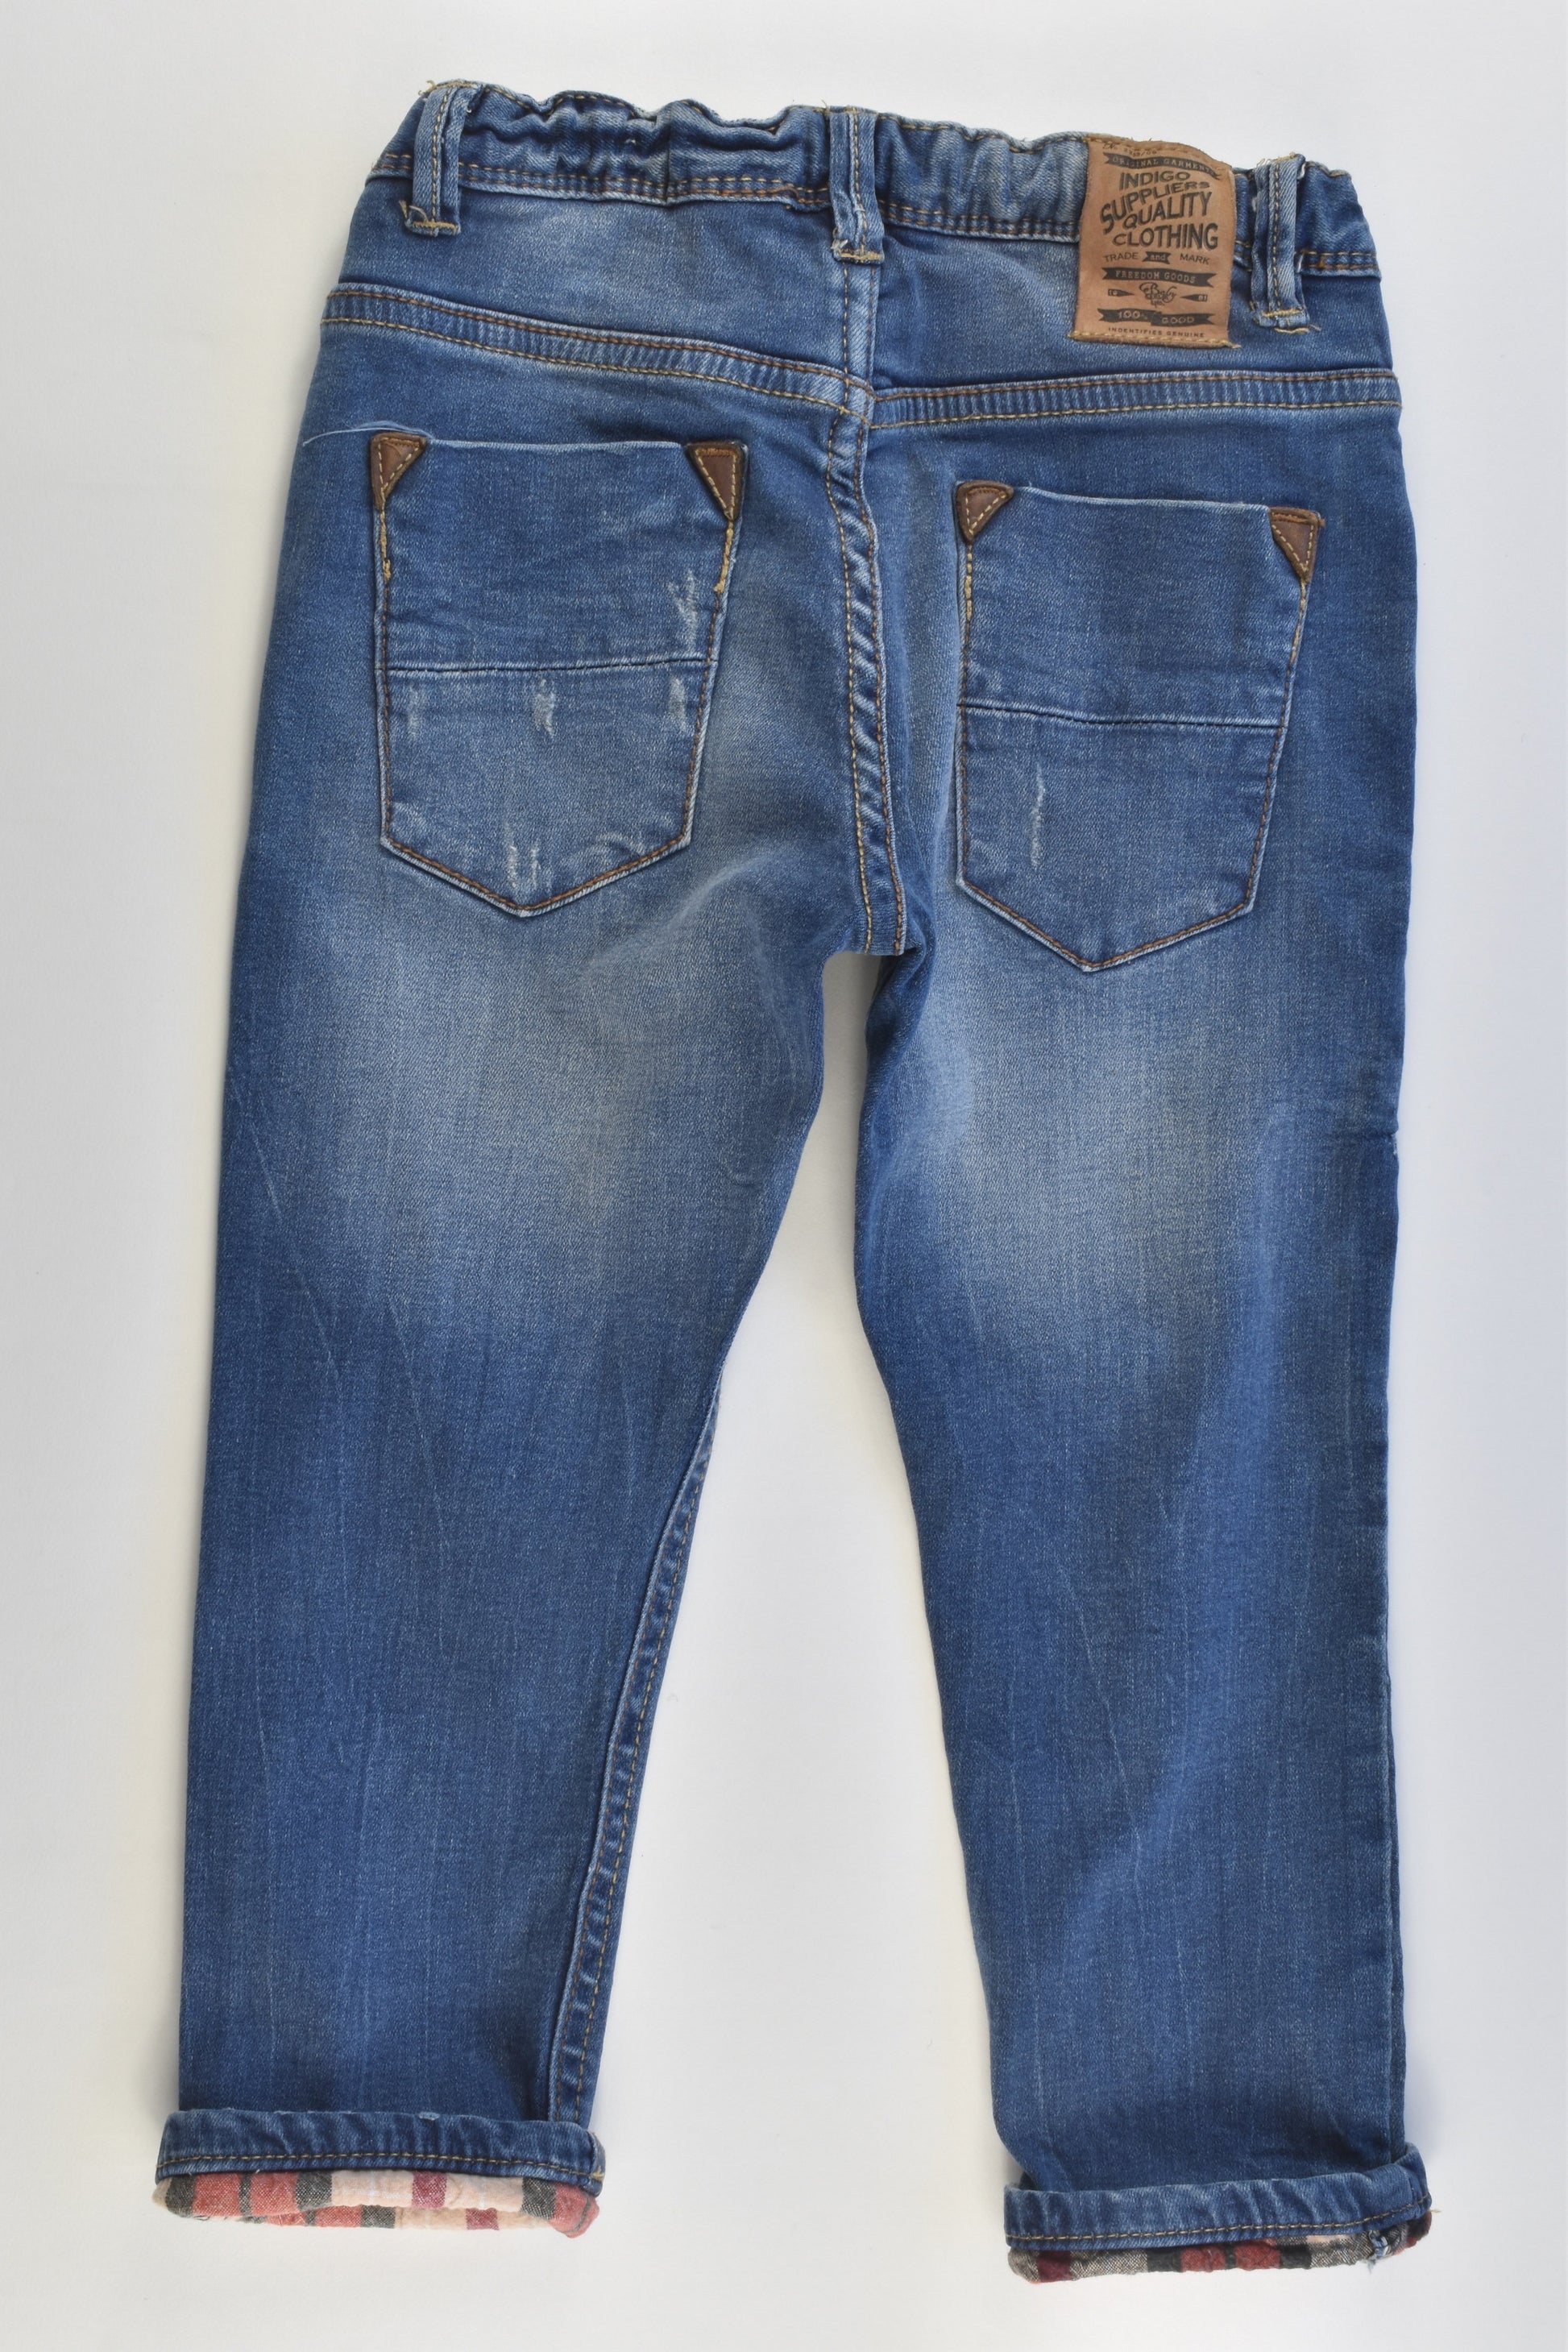 Zara Size 2/3 (98 cm) Stretchy Denim Pants